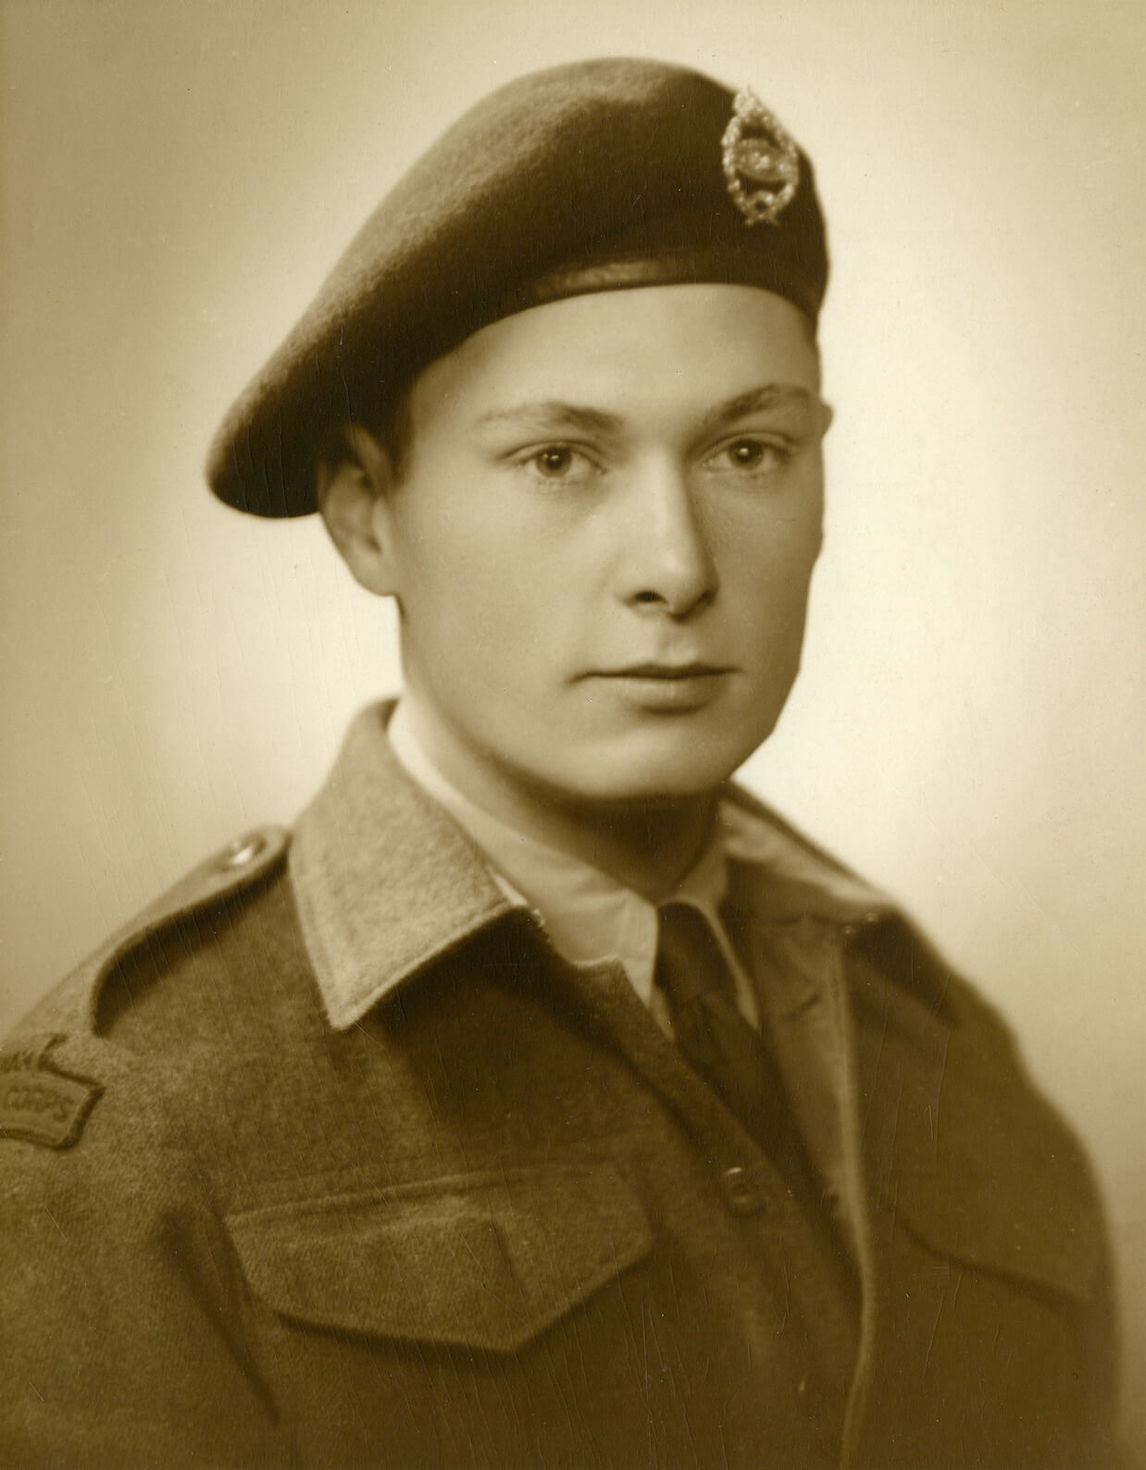 Paterson Ewen dans son uniforme de l’armée, v. 1944